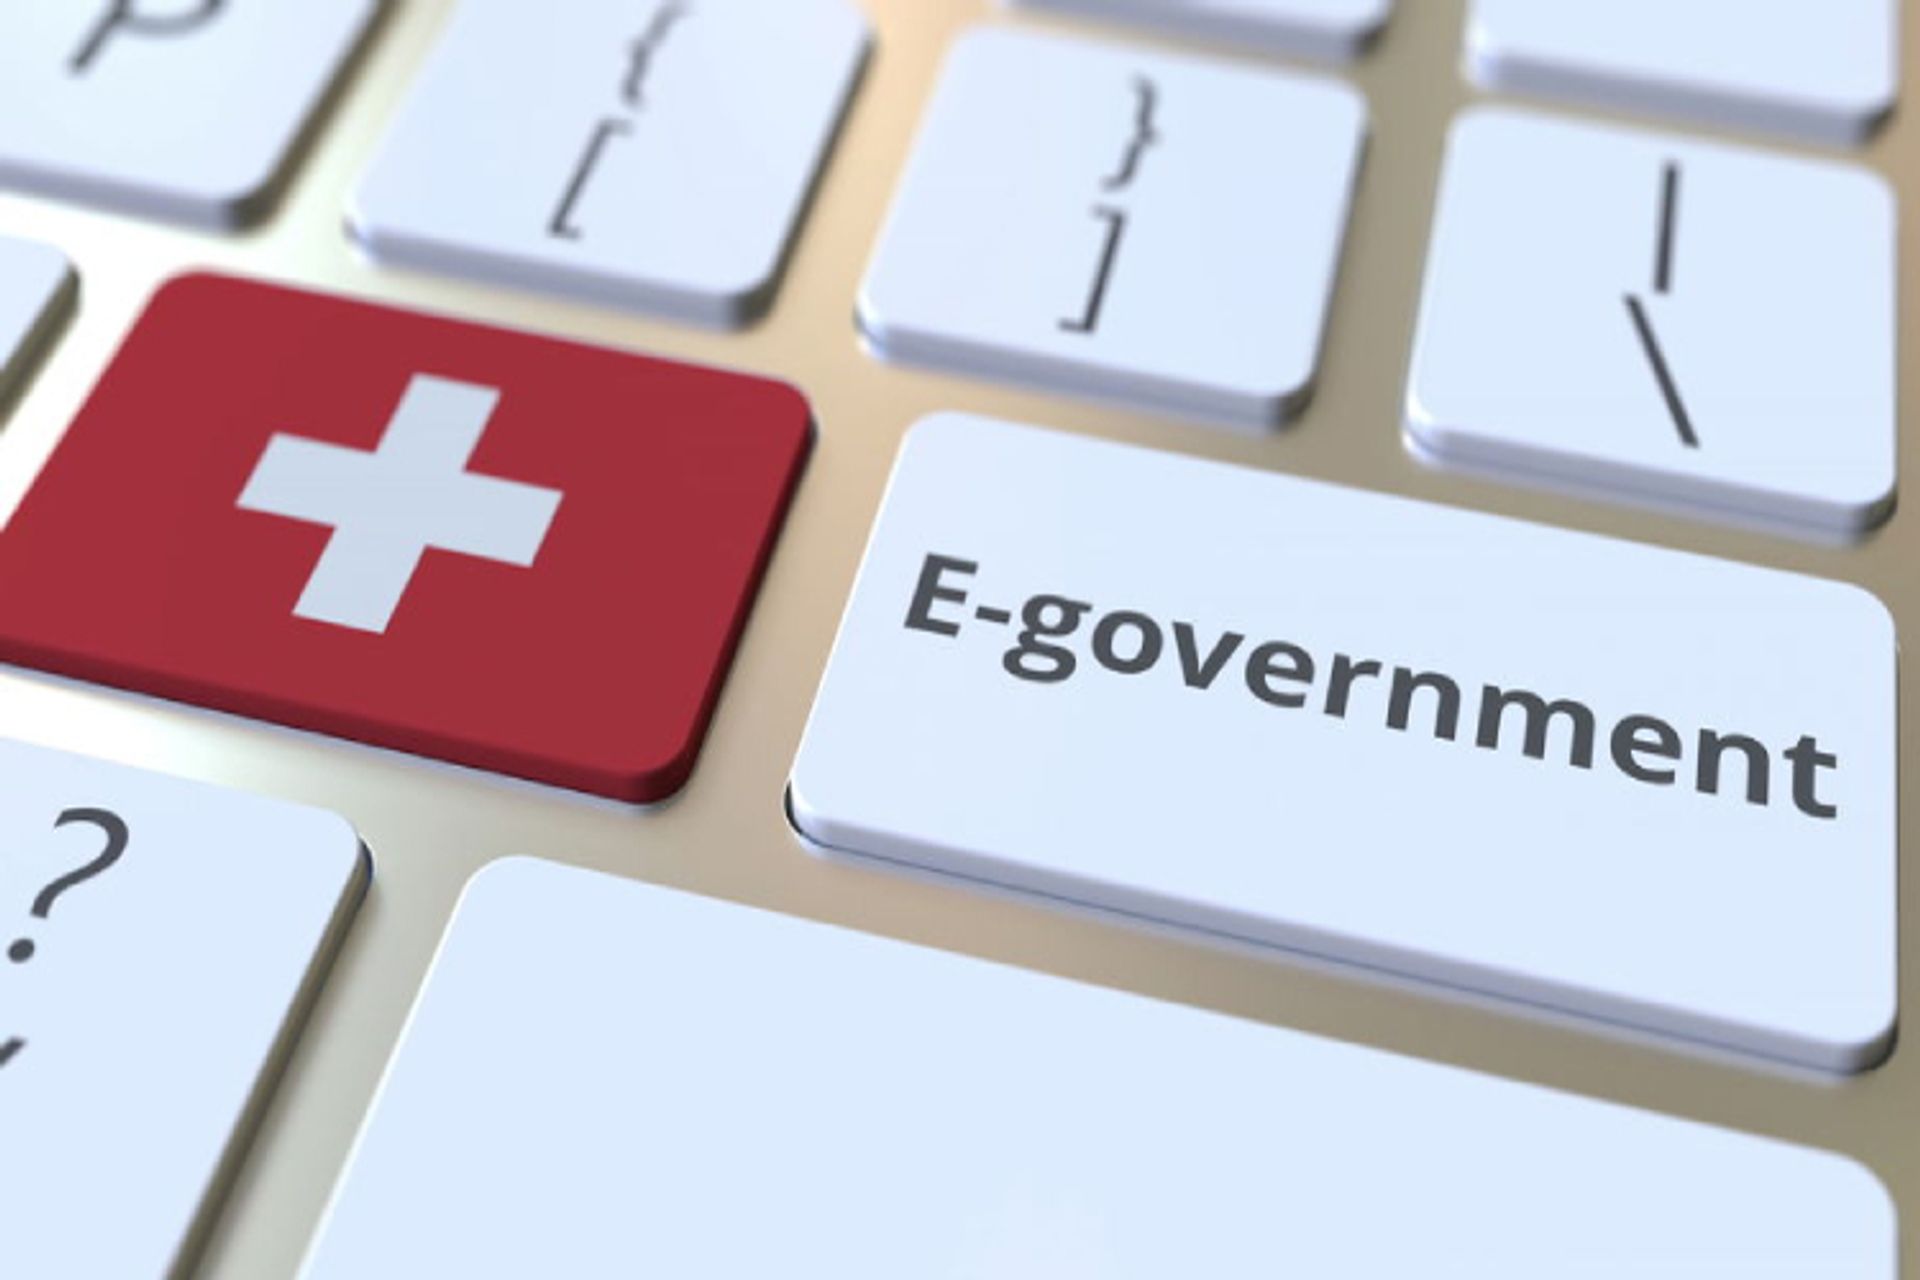 Конфедерация Швейцария обръща голямо внимание на проекта за цифрова федерална администрация